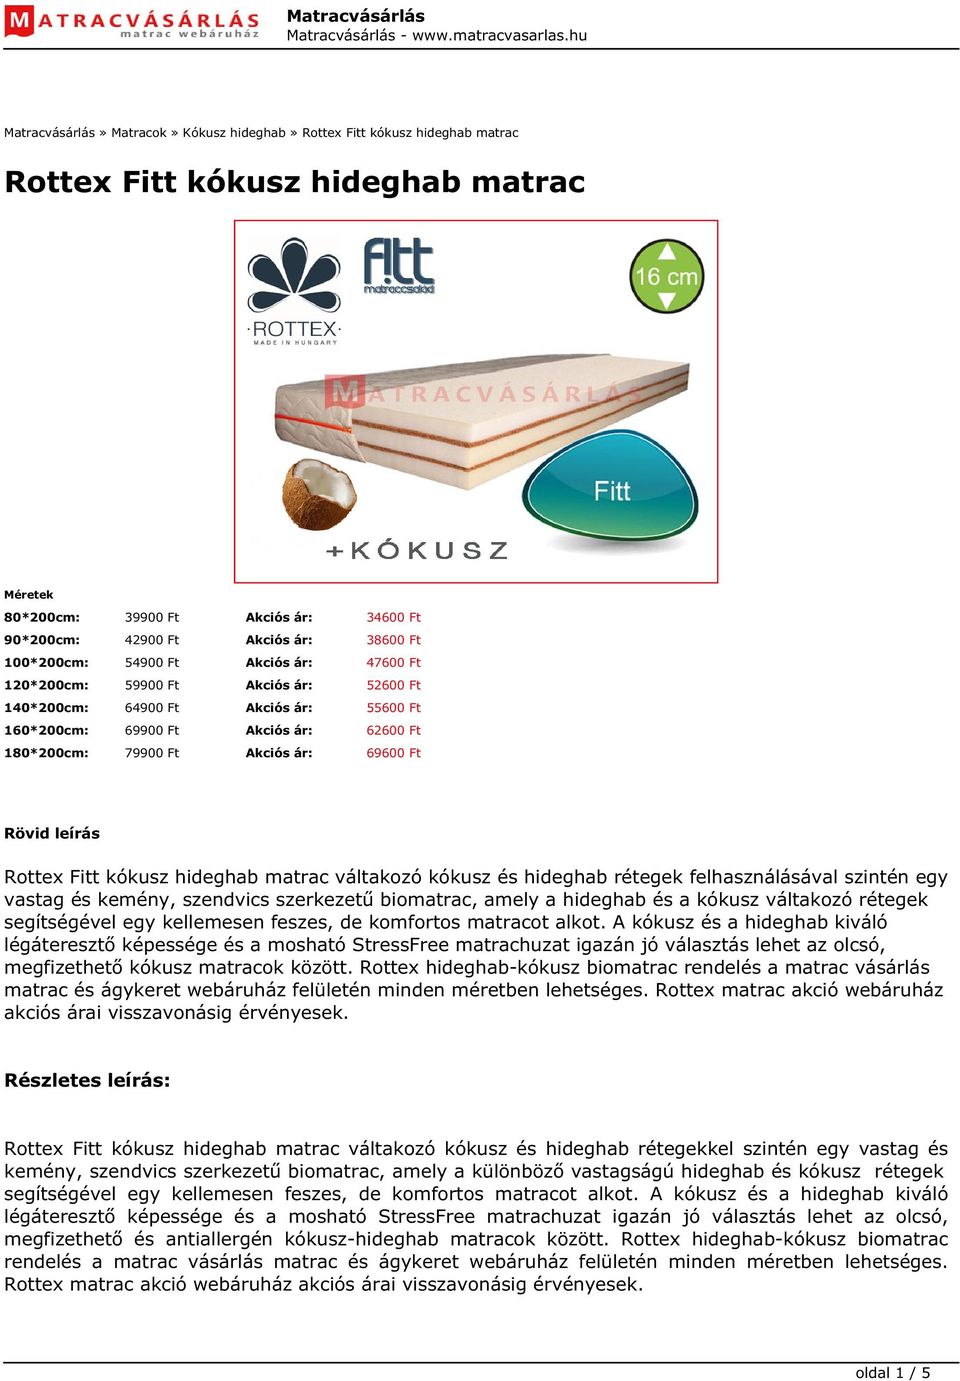 Rövid leírás Rottex Fitt kókusz hideghab matrac váltakozó kókusz és hideghab rétegek felhasználásával szintén egy vastag és kemény, szendvics szerkezetű biomatrac, amely a hideghab és a kókusz